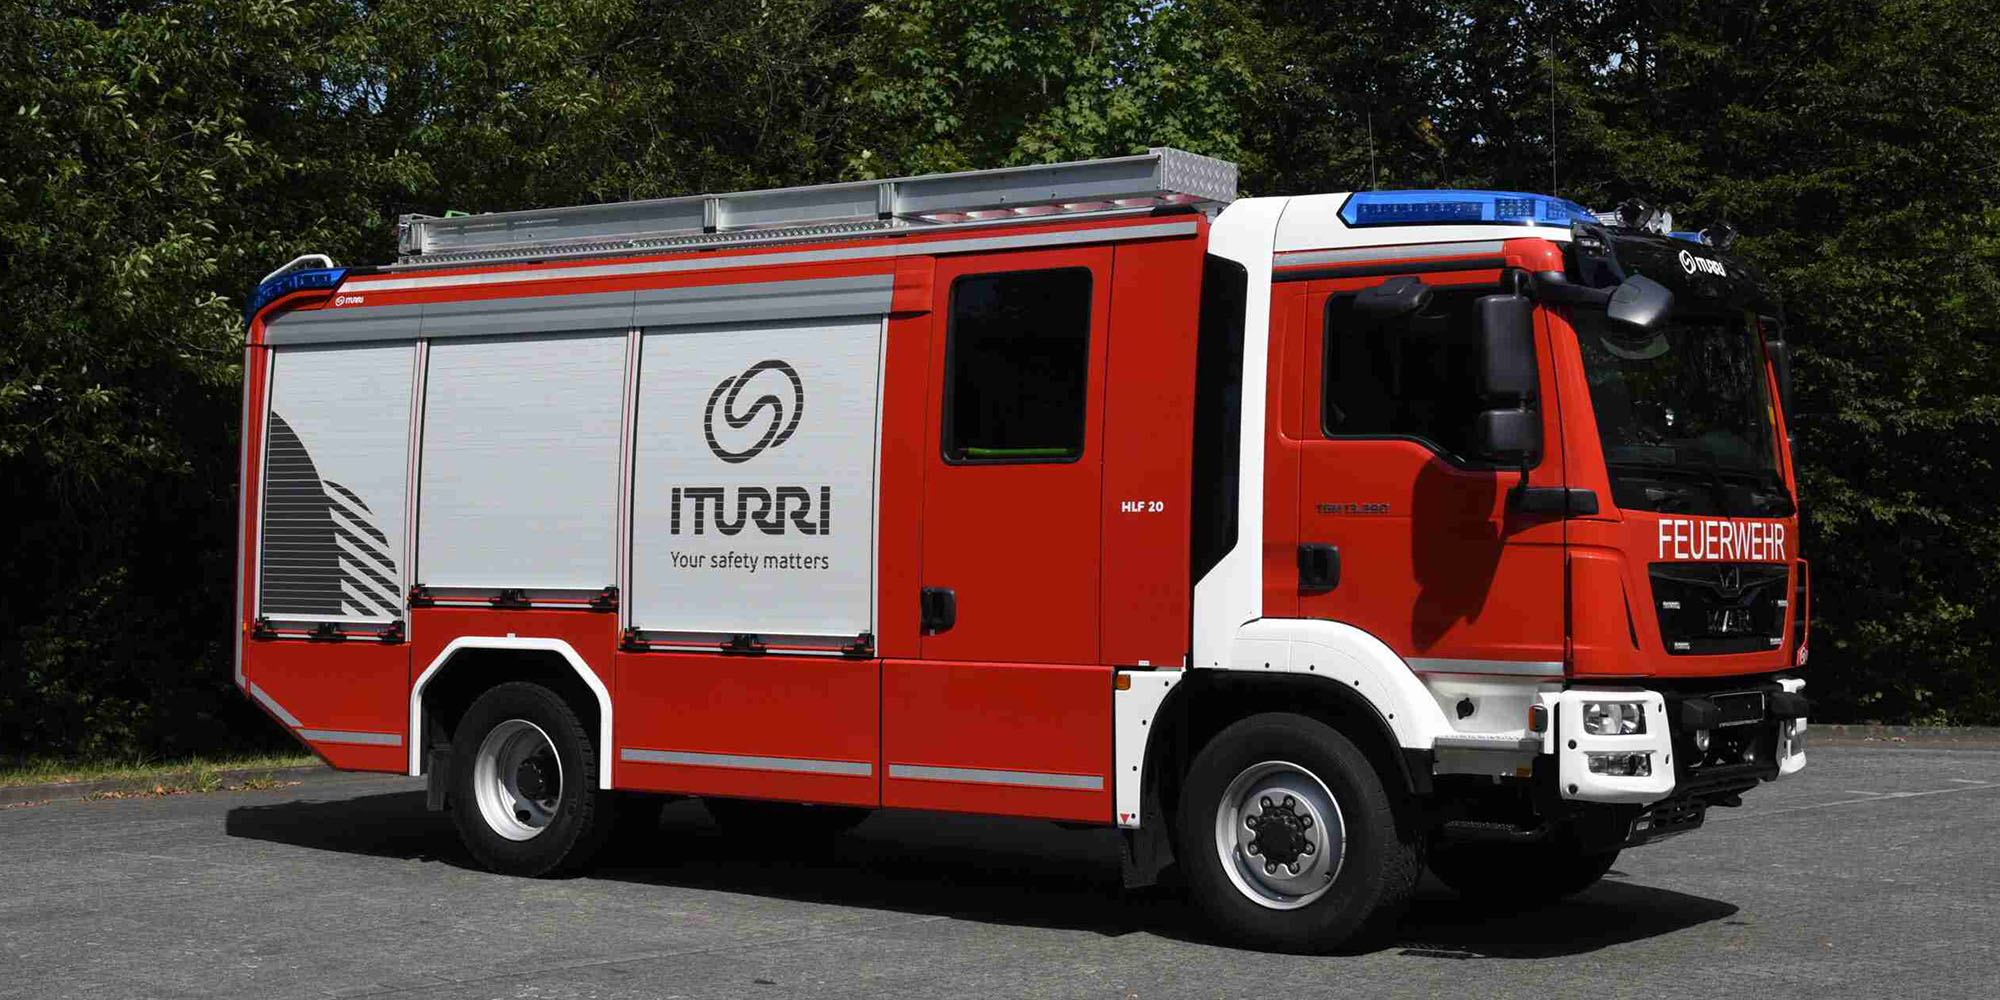 ITURRI - Your safety matters, das Firmen-Logo von ITURRI an dem Dach